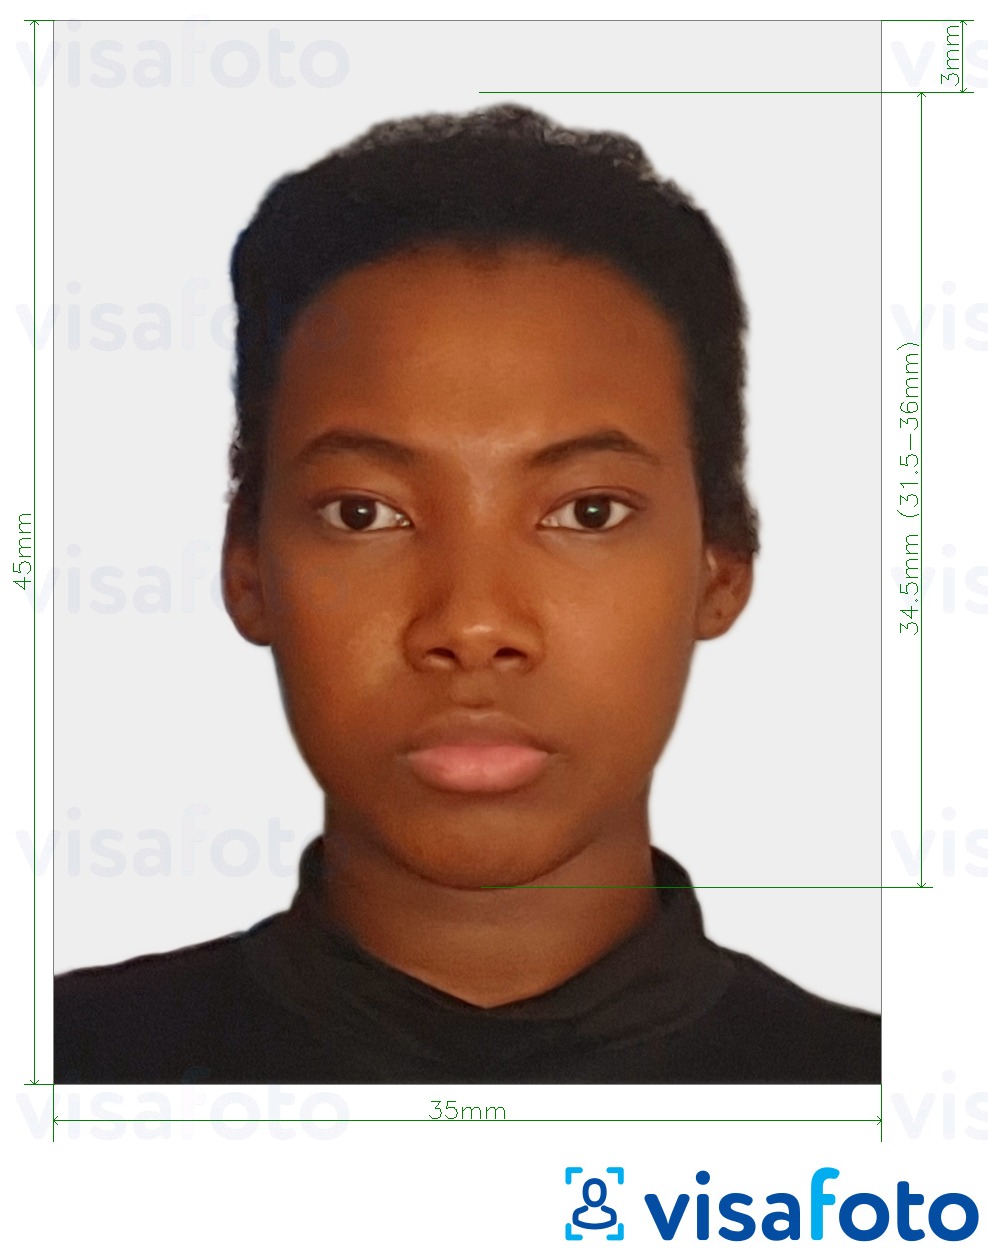 Contoh foto untuk Pasport Togo 4.5x3.5 cm (45x35mm) dengan spesifikasi saiz yang tepat.